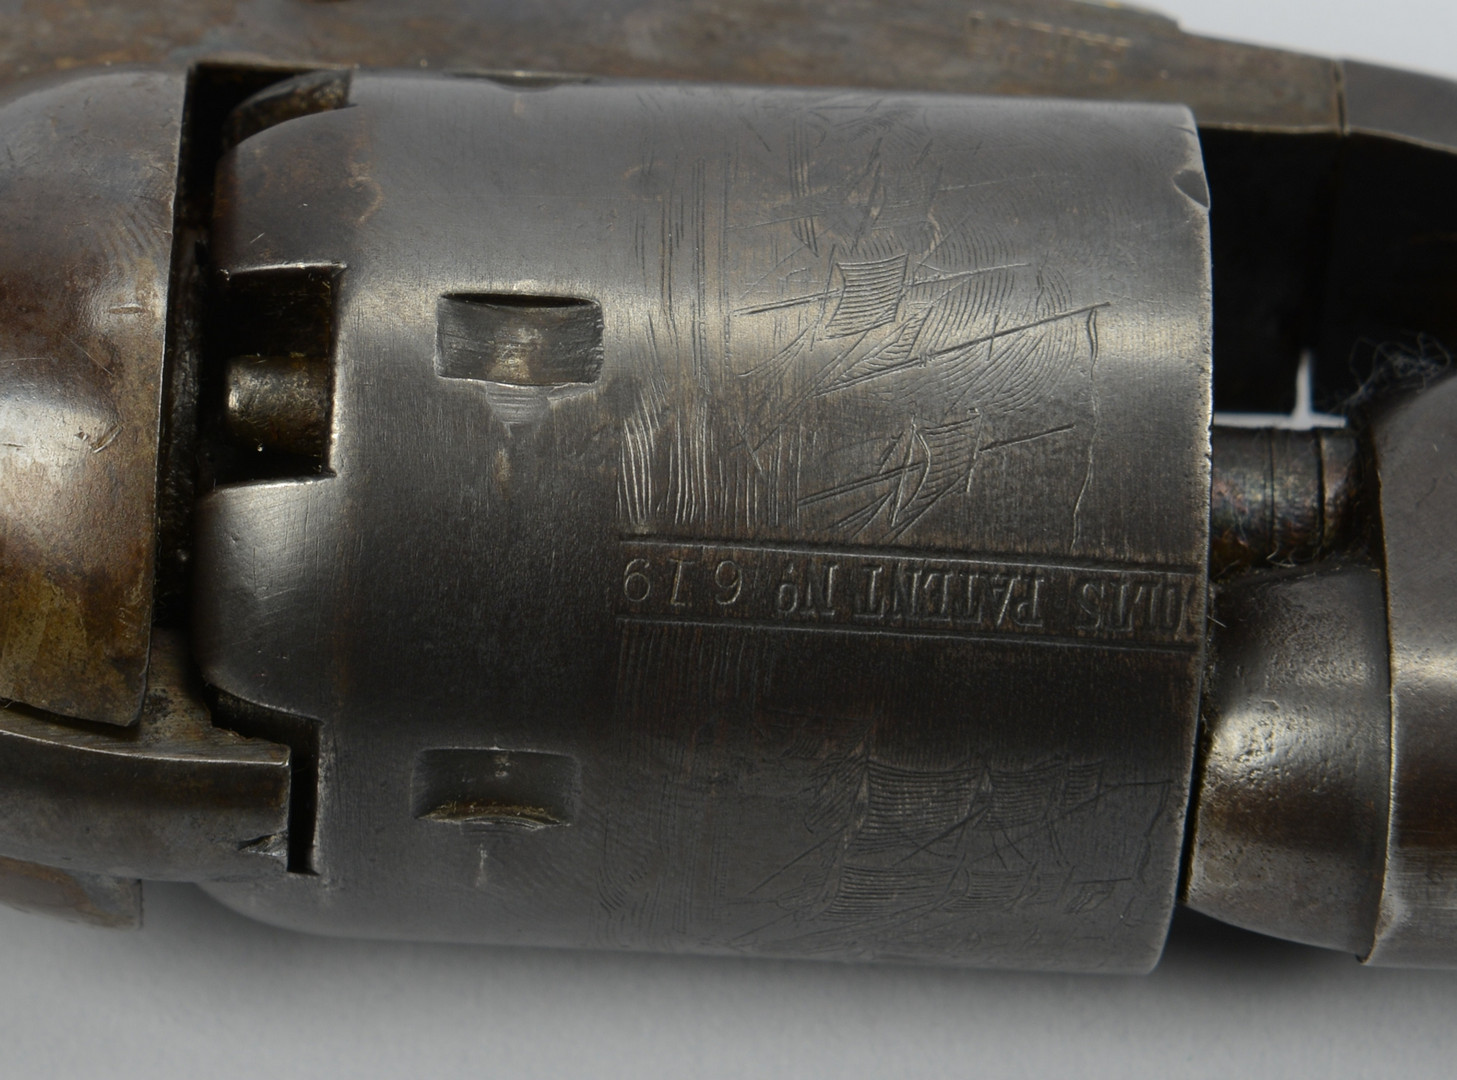 Lot 390: Colt Model 1861 Navy Revolver, 1867